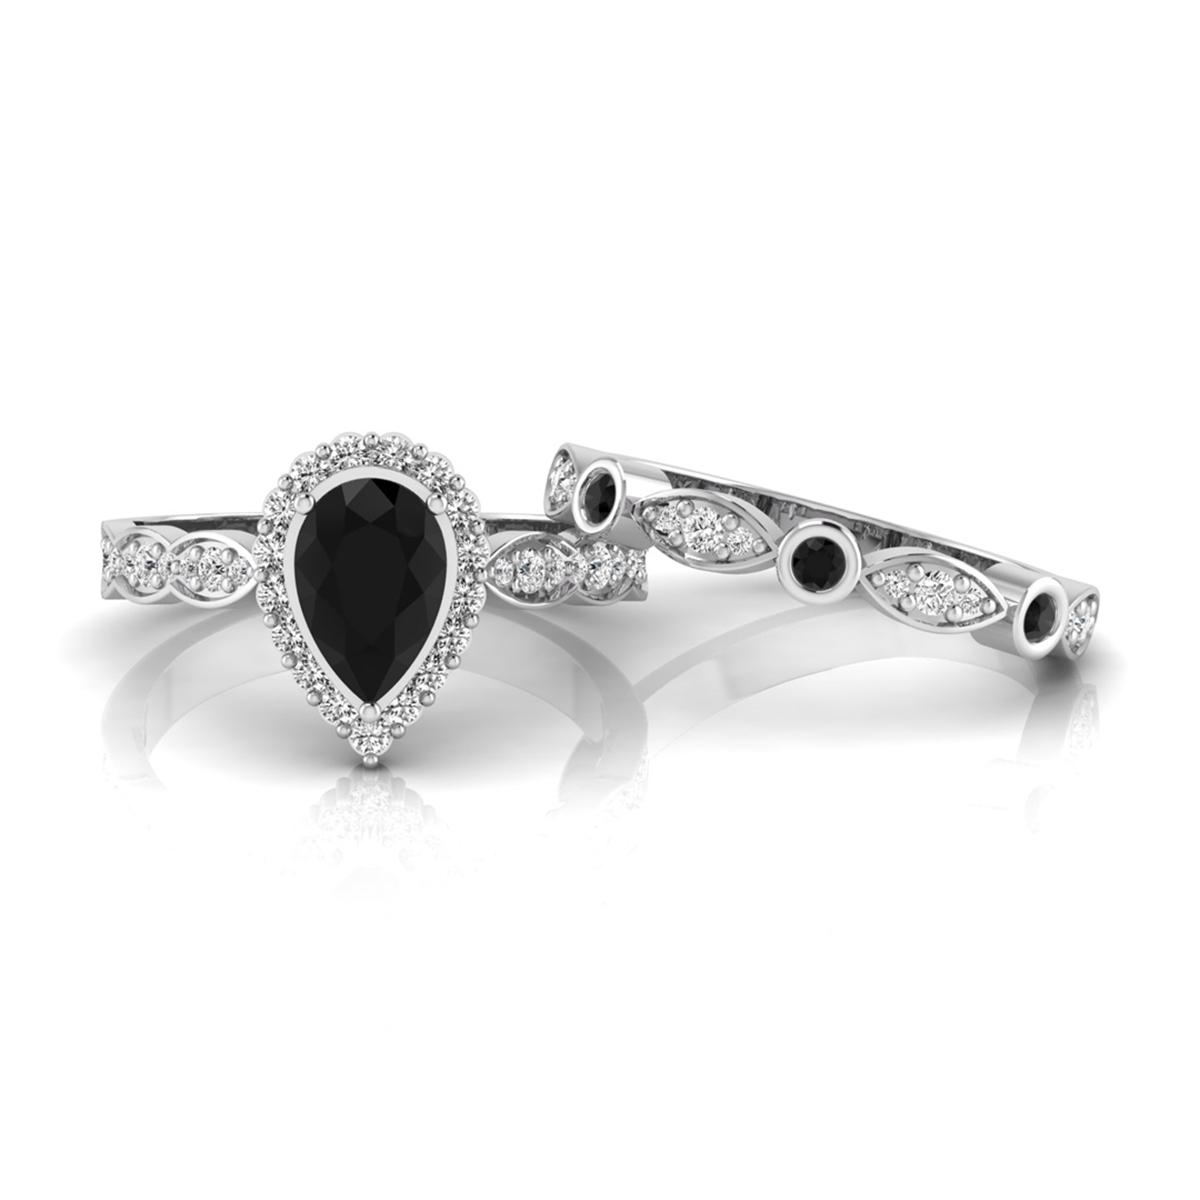 Black Pear Cut CZ Stone Halo Wedding Ring Set